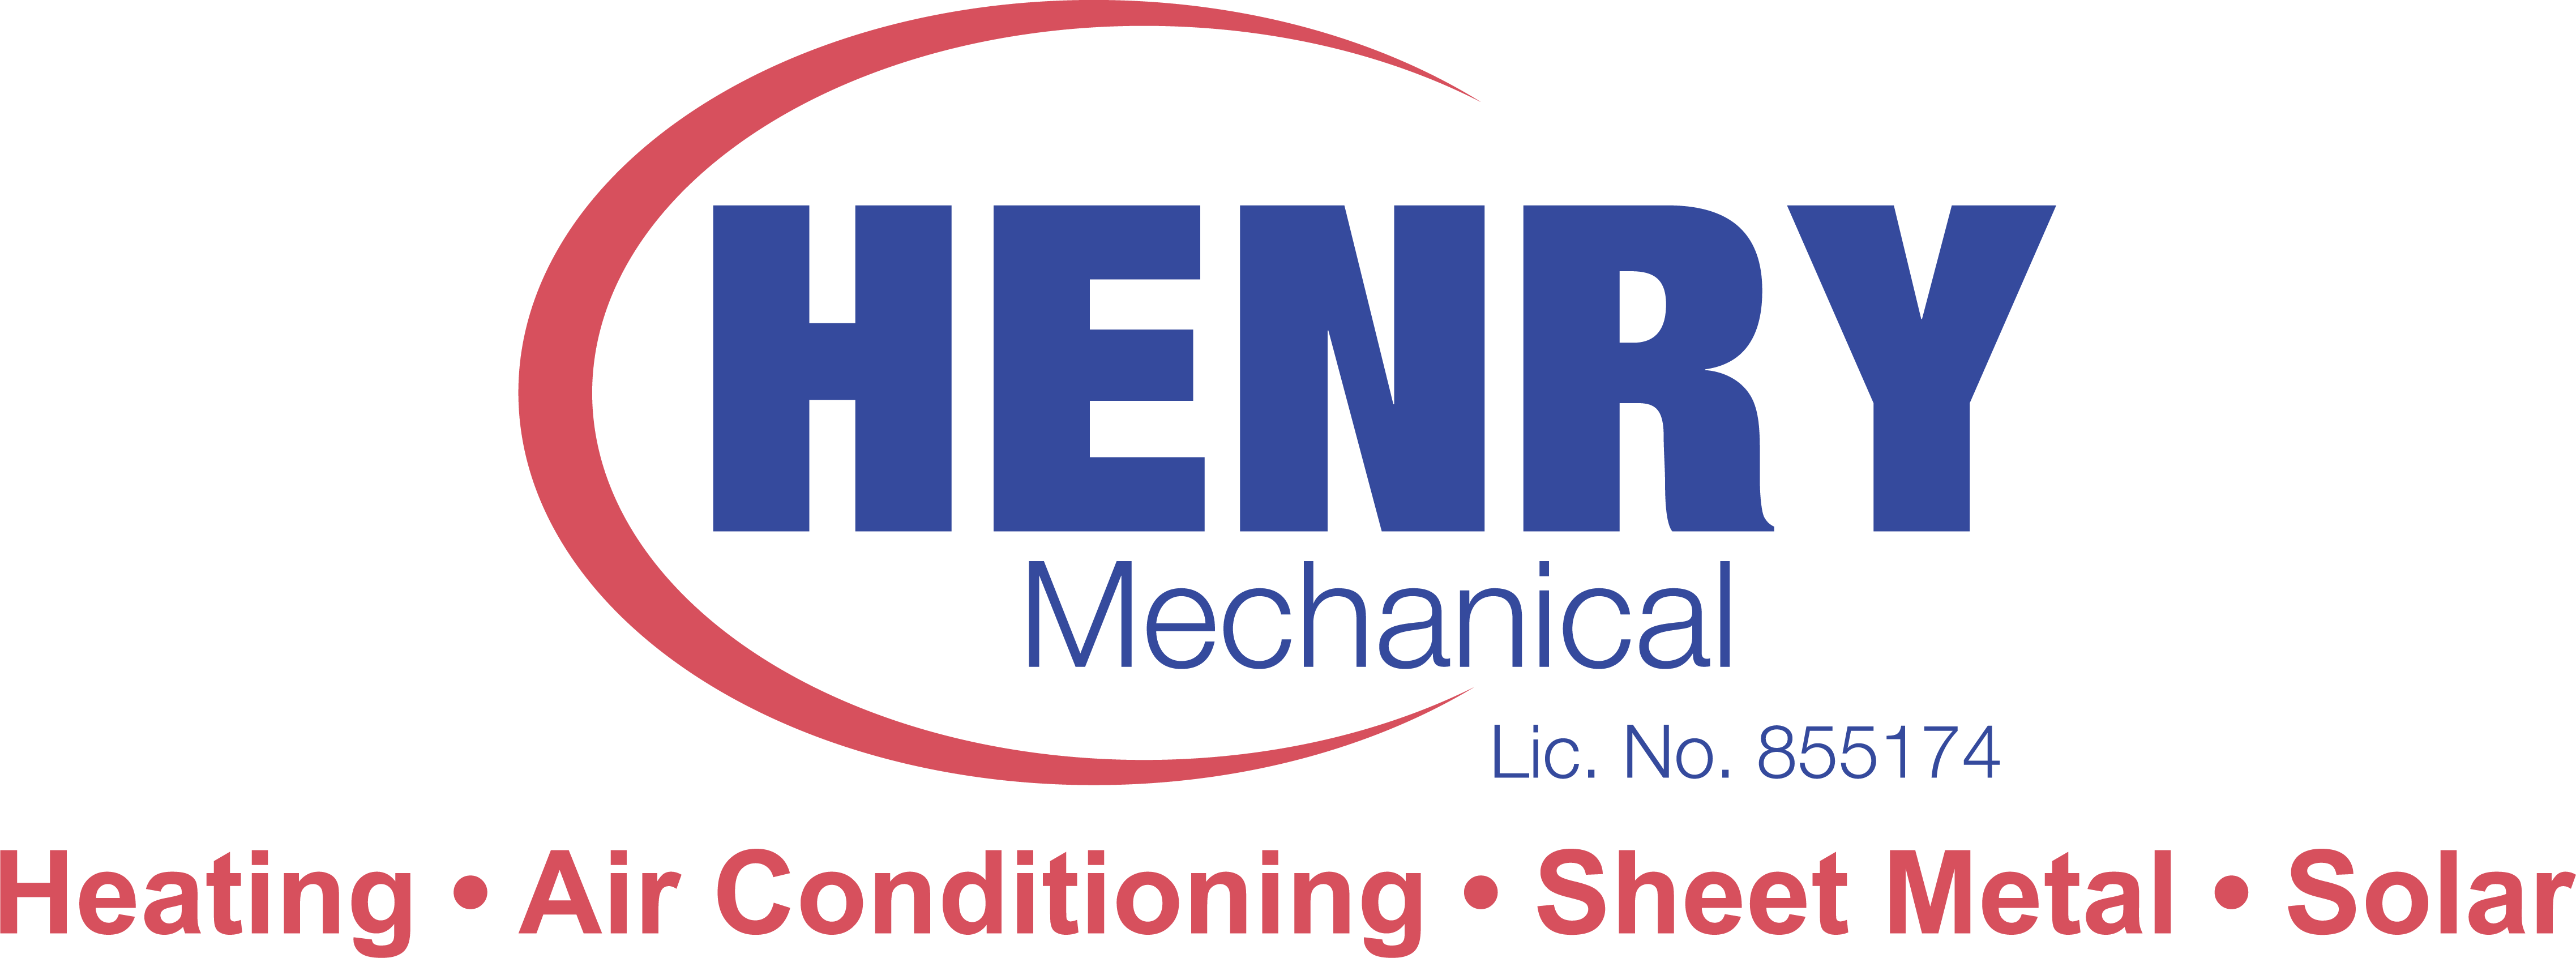 North Bay Heating, Air Conditioning and Sheet Metal, Inc. Logo